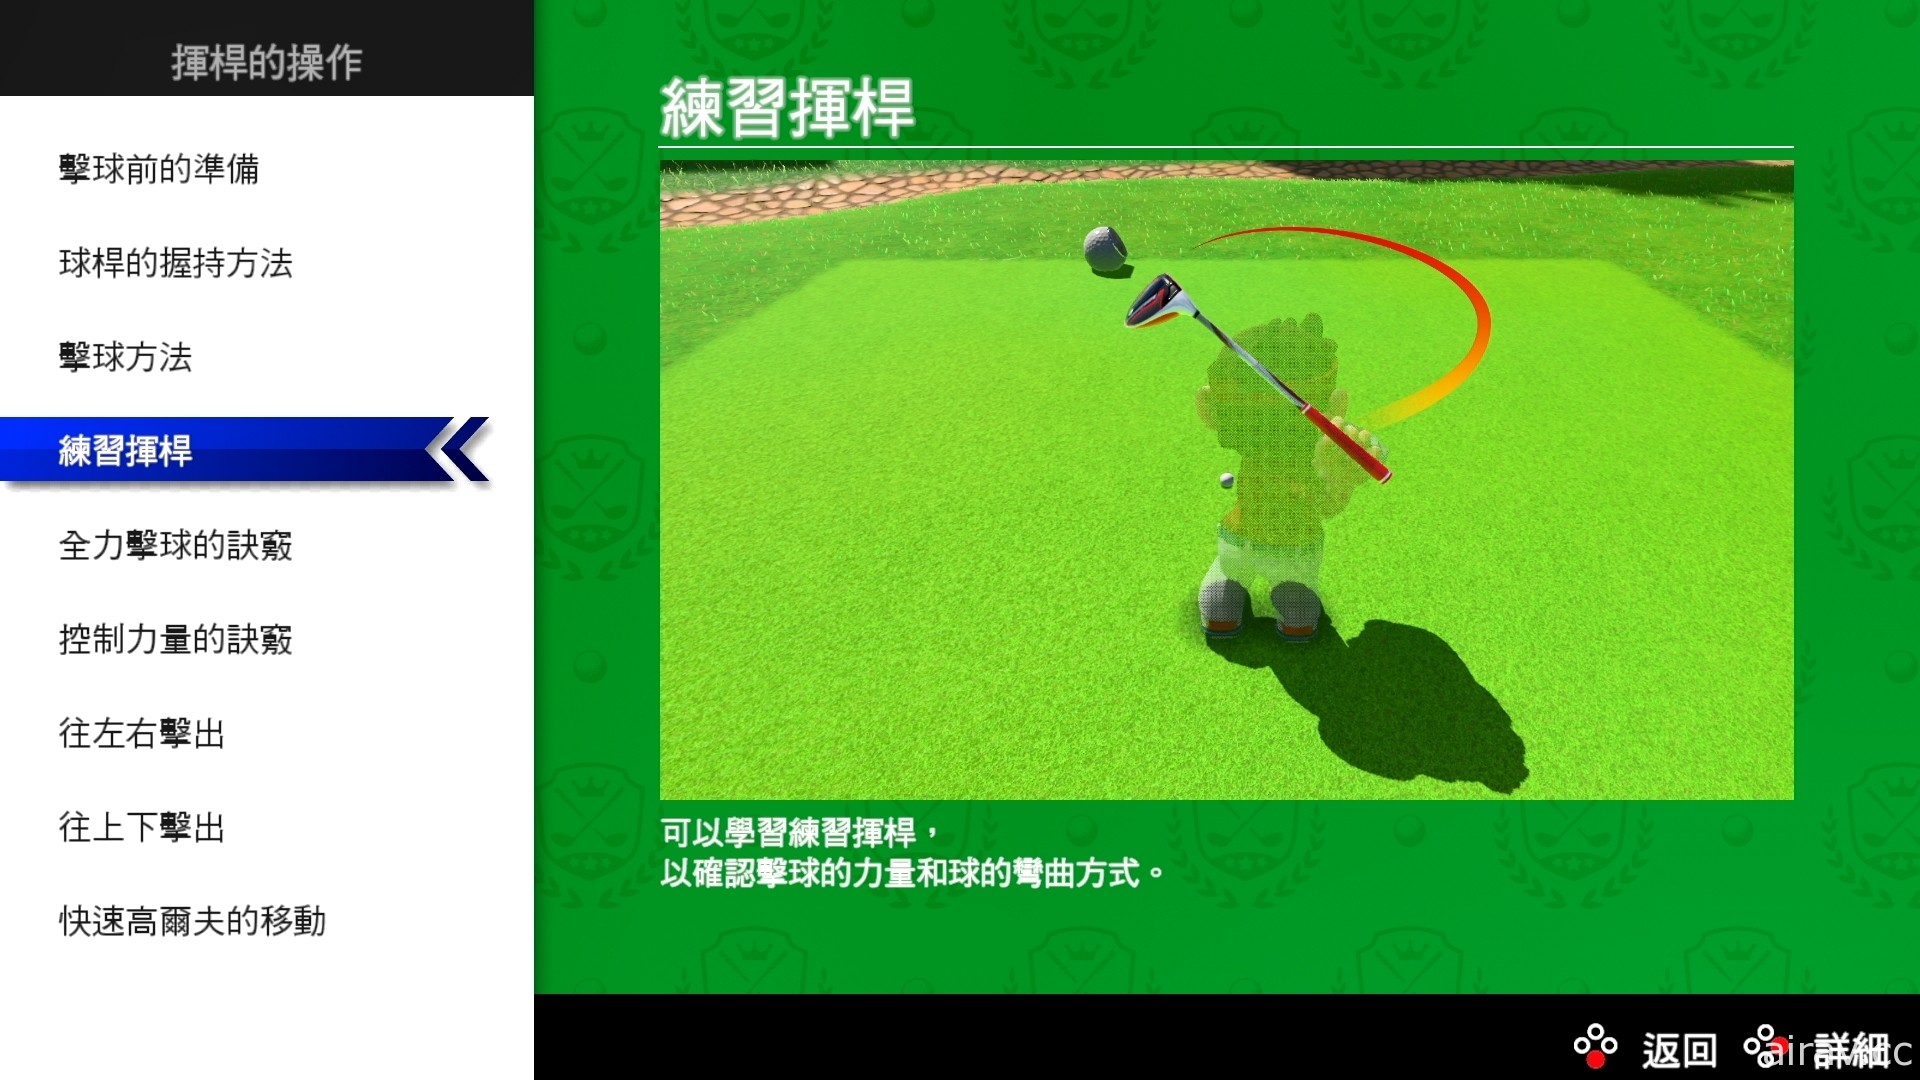 《瑪利歐高爾夫 超級衝衝衝》免費更新 Ver2.0.0 現已推出 介紹新增內容